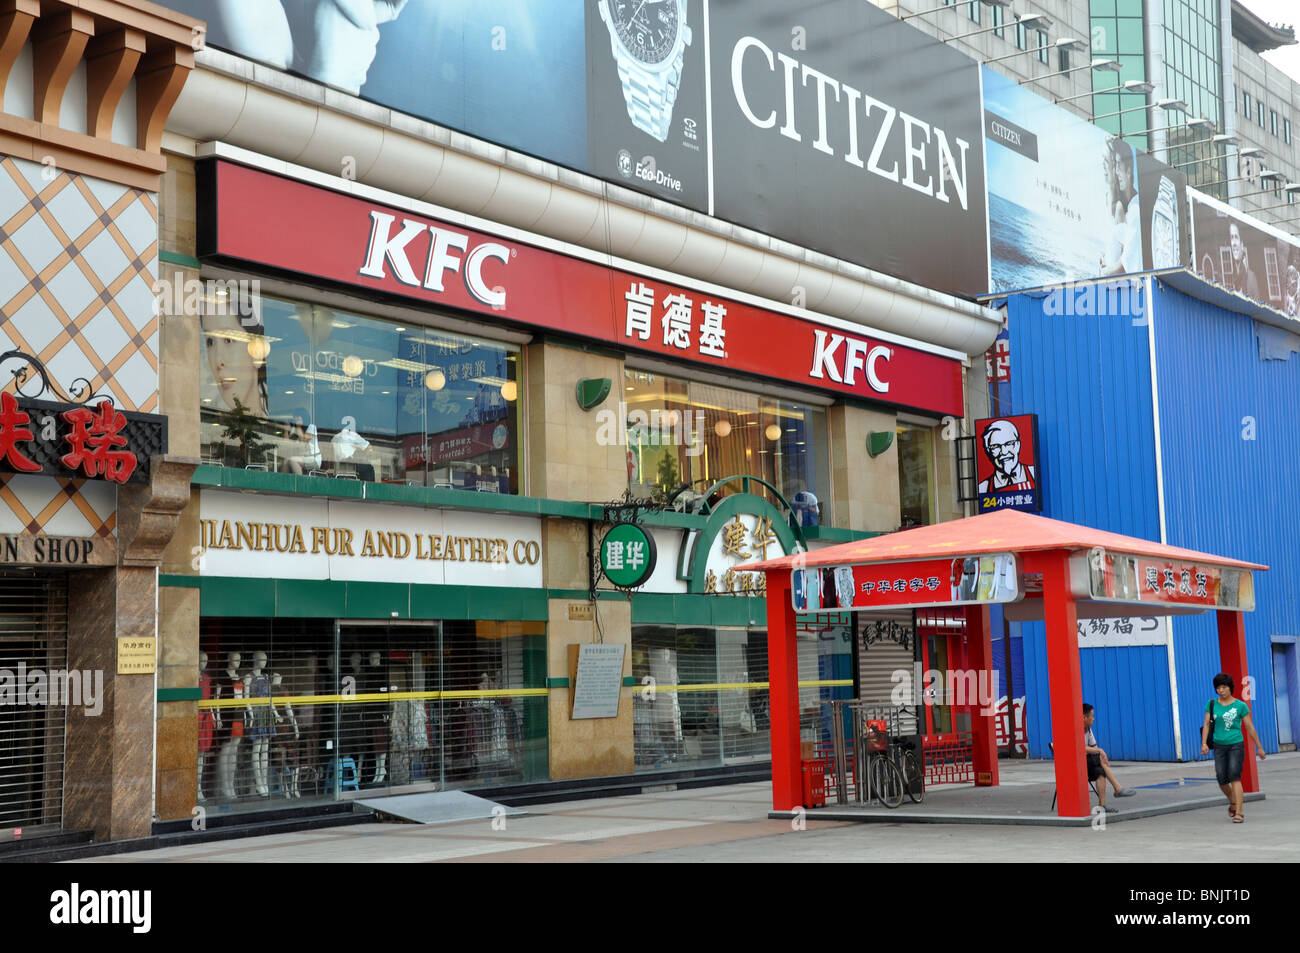 KFC branch Wangfujing, Beijing, China Stock Photo